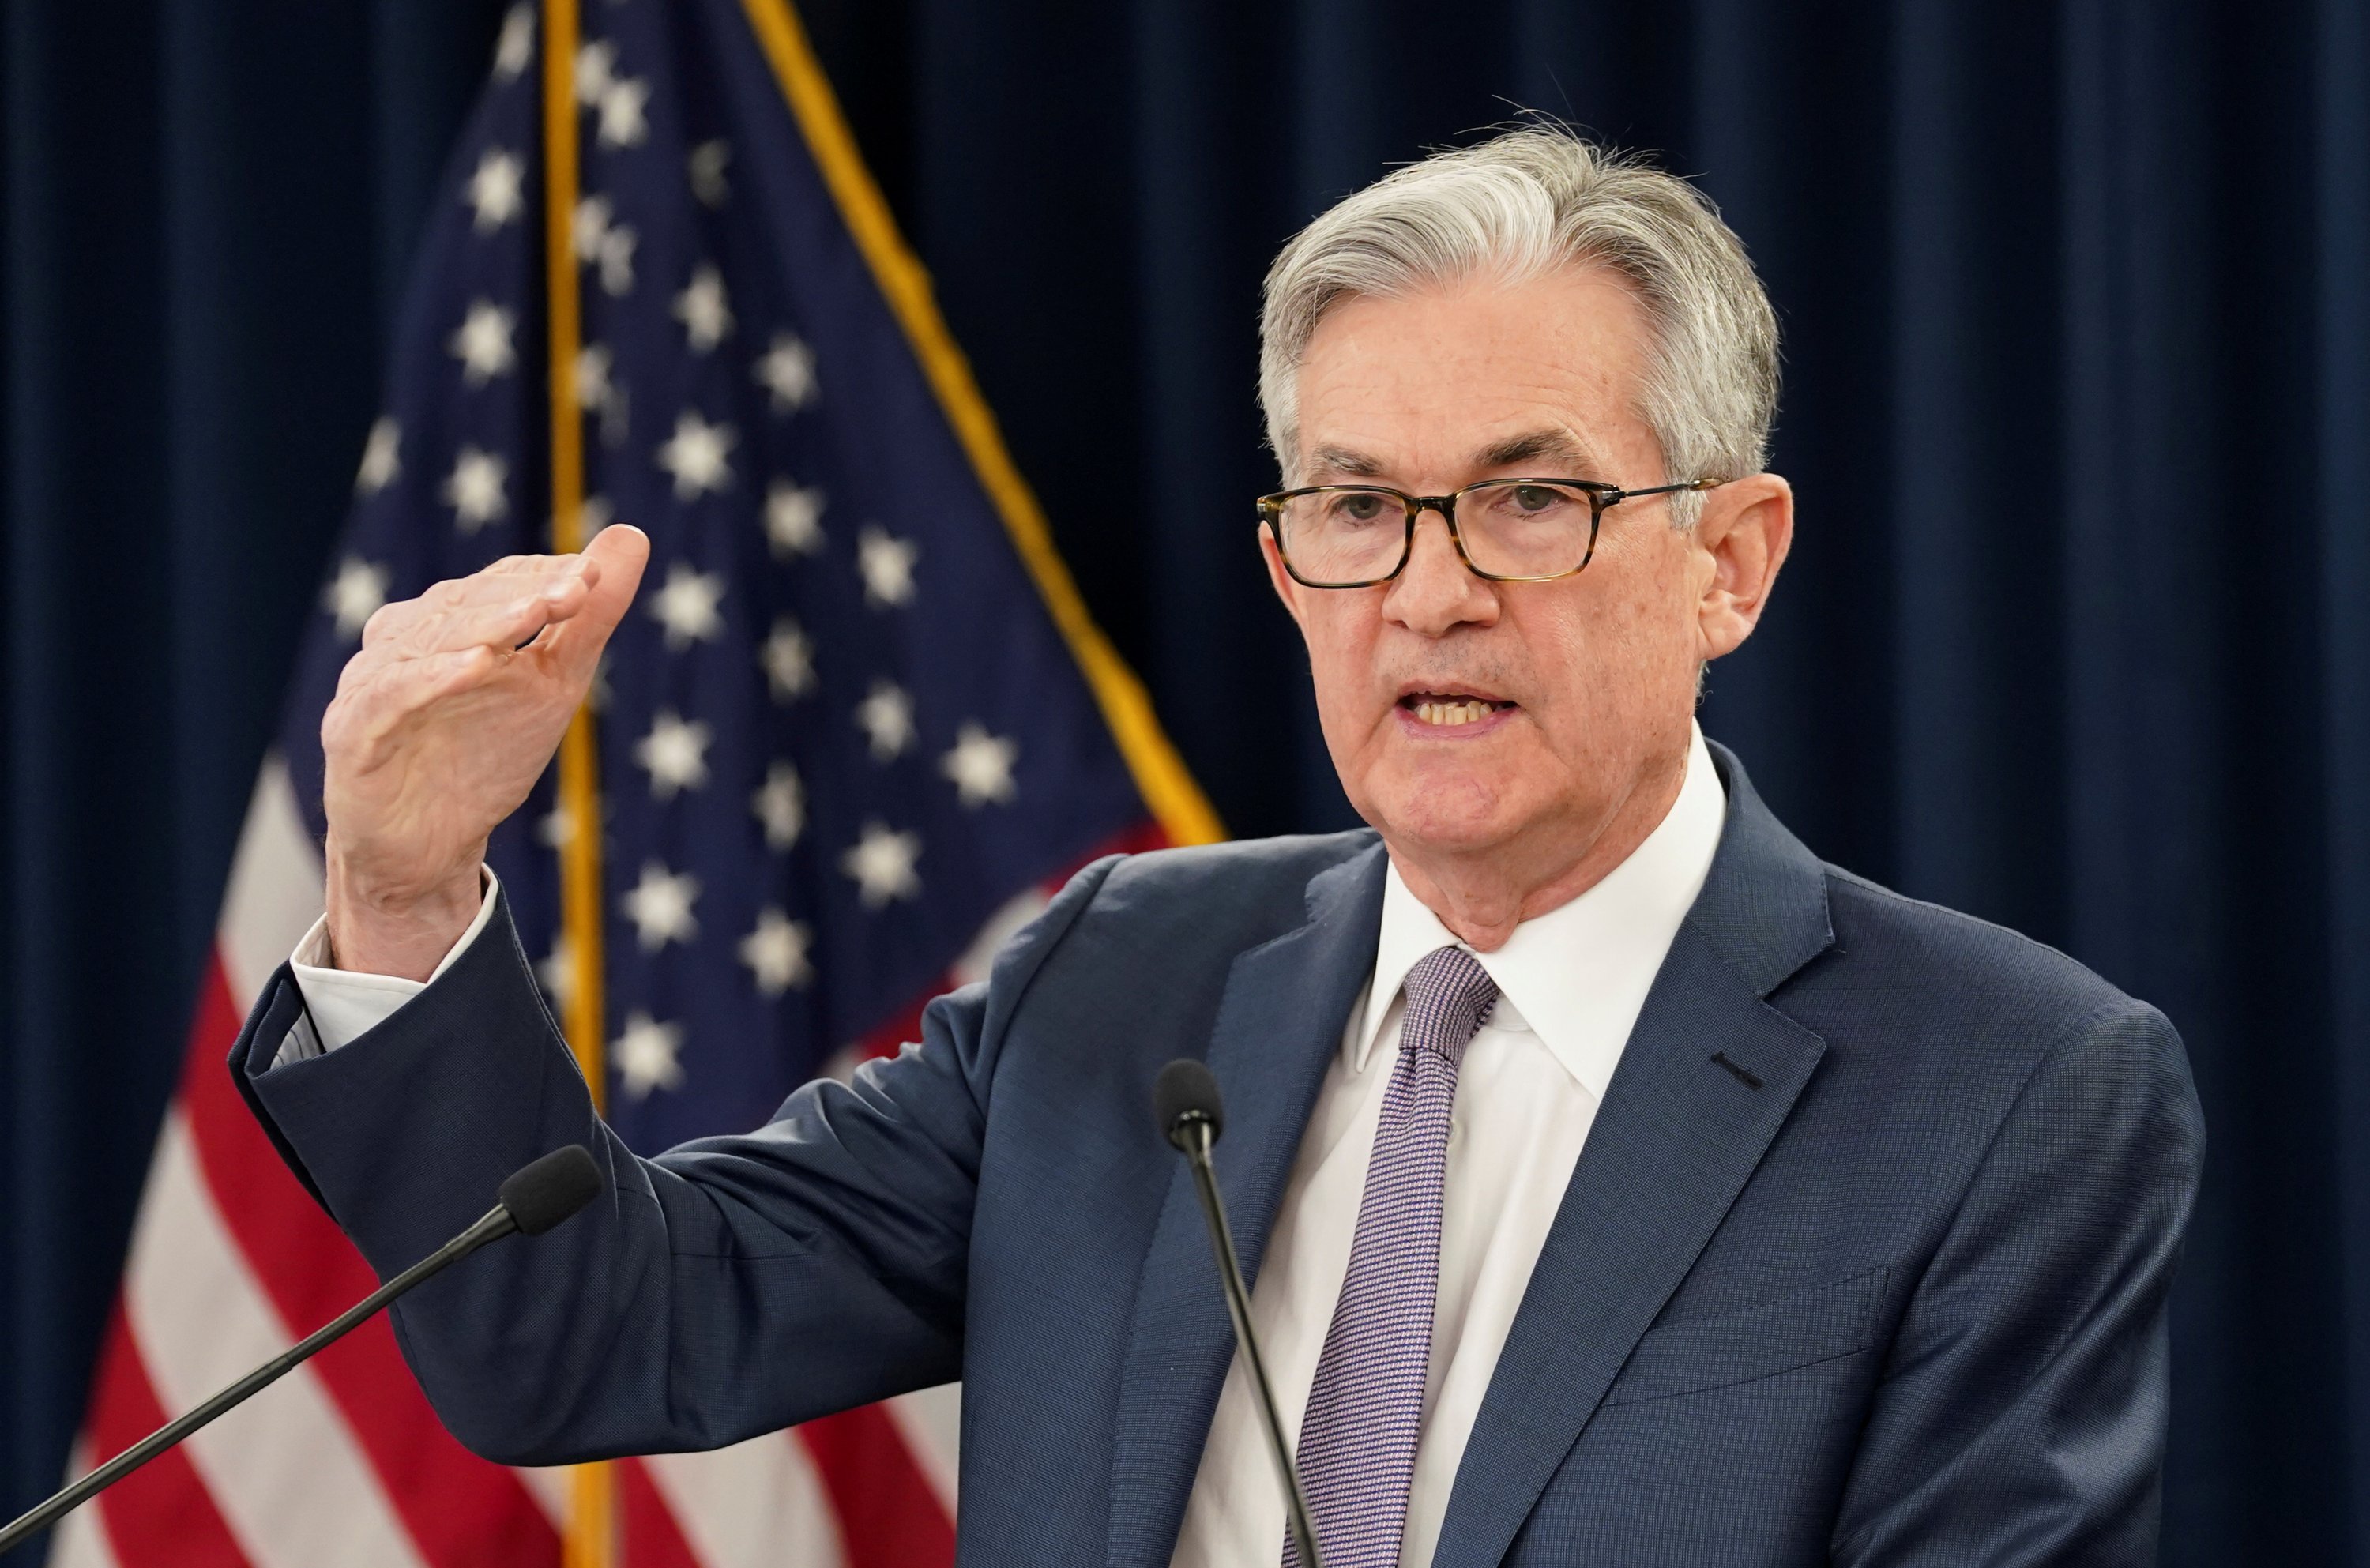 Tin tức quan trọng trong ngày: Nhận định của Powell về tốc độ hồi phục kinh tế, tình hình vi-rút tại các nước đang phát triển và căng thẳng Mỹ - Trung